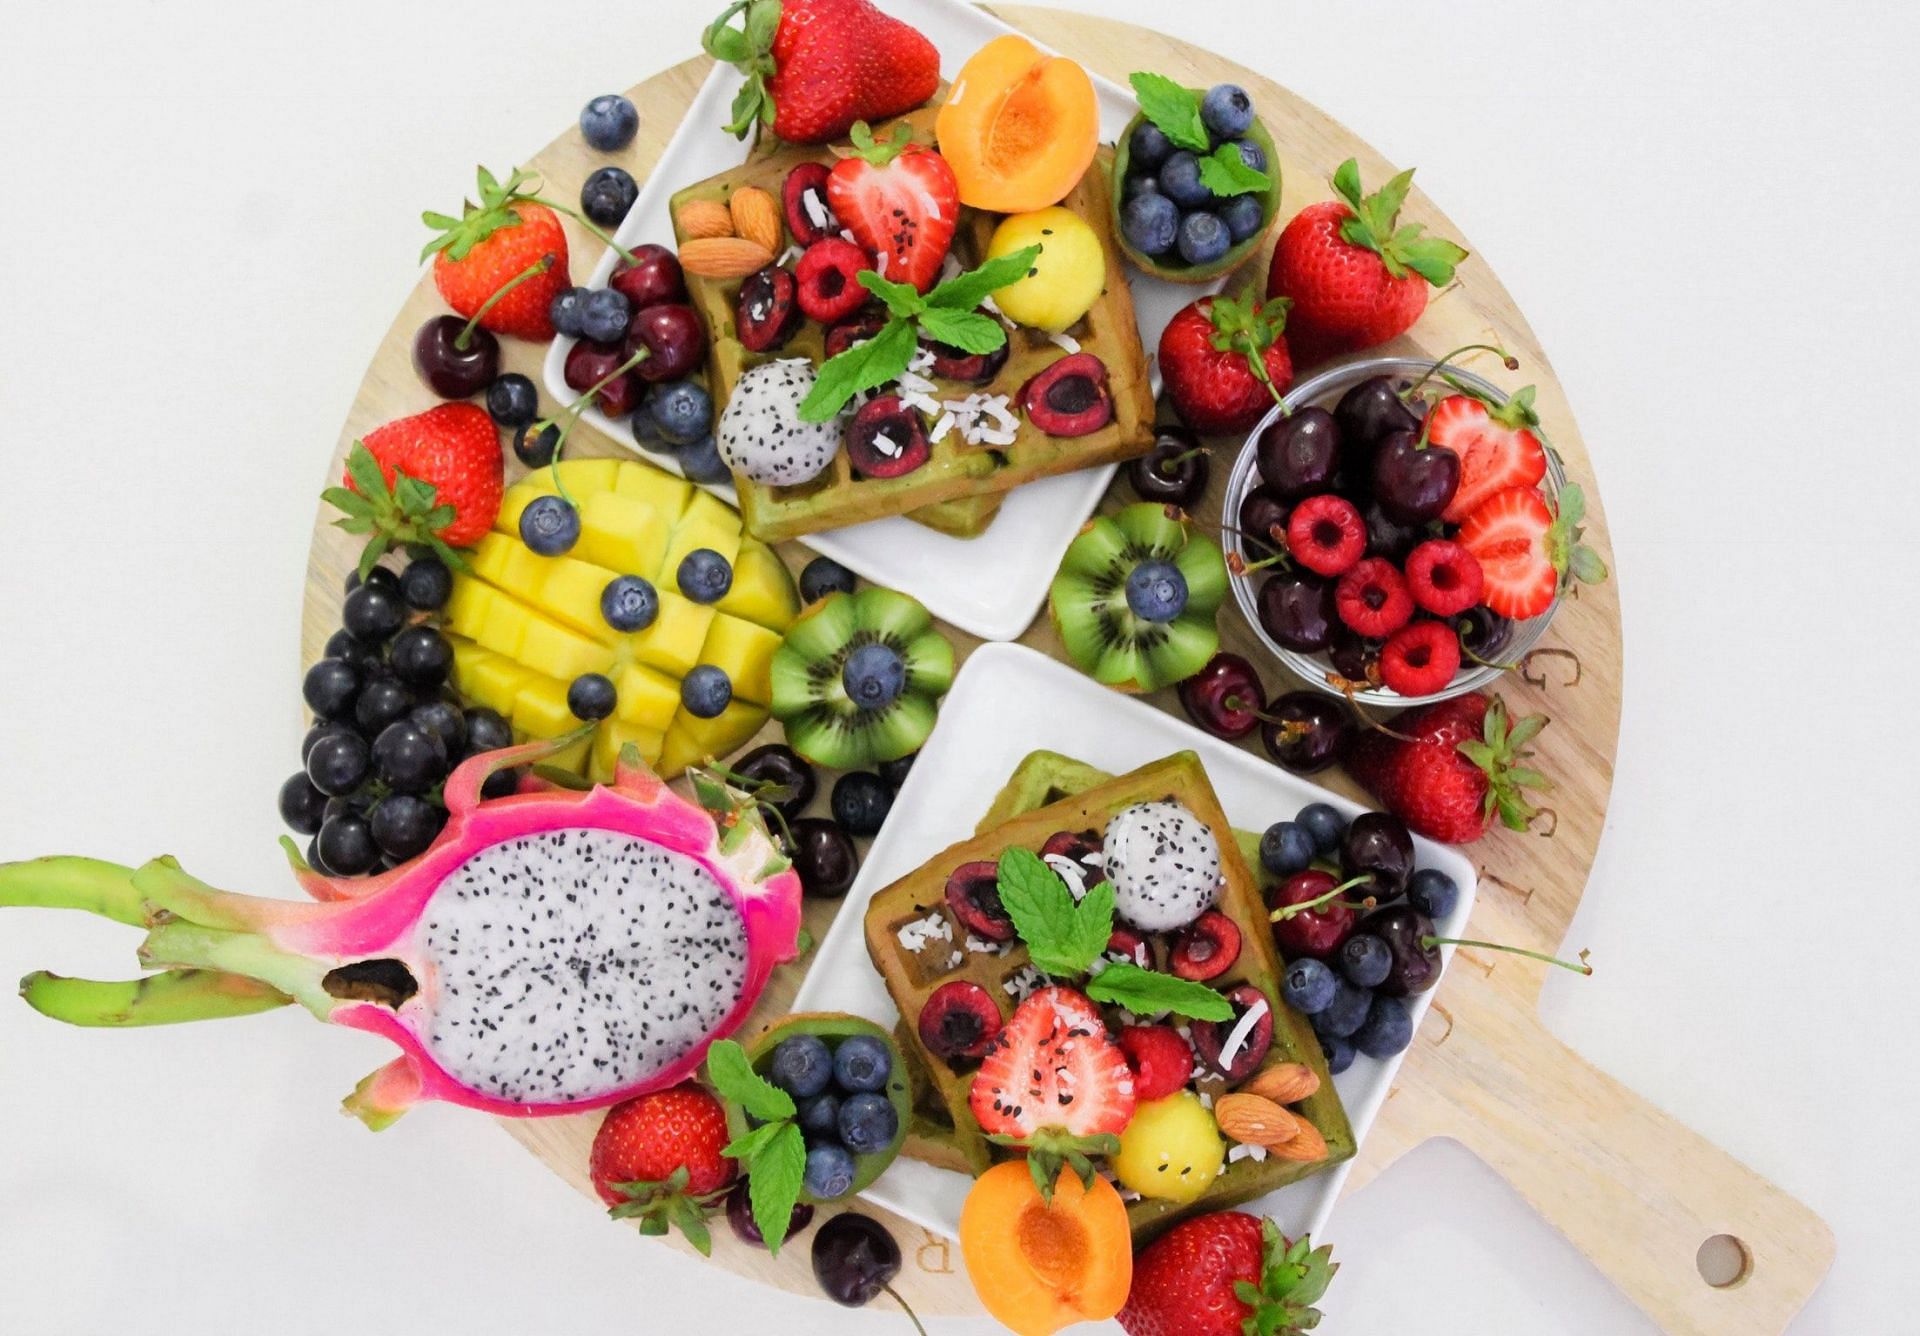 Fruit diet is getting popular nowadays. (Image via Pexels/ Jane Doan)